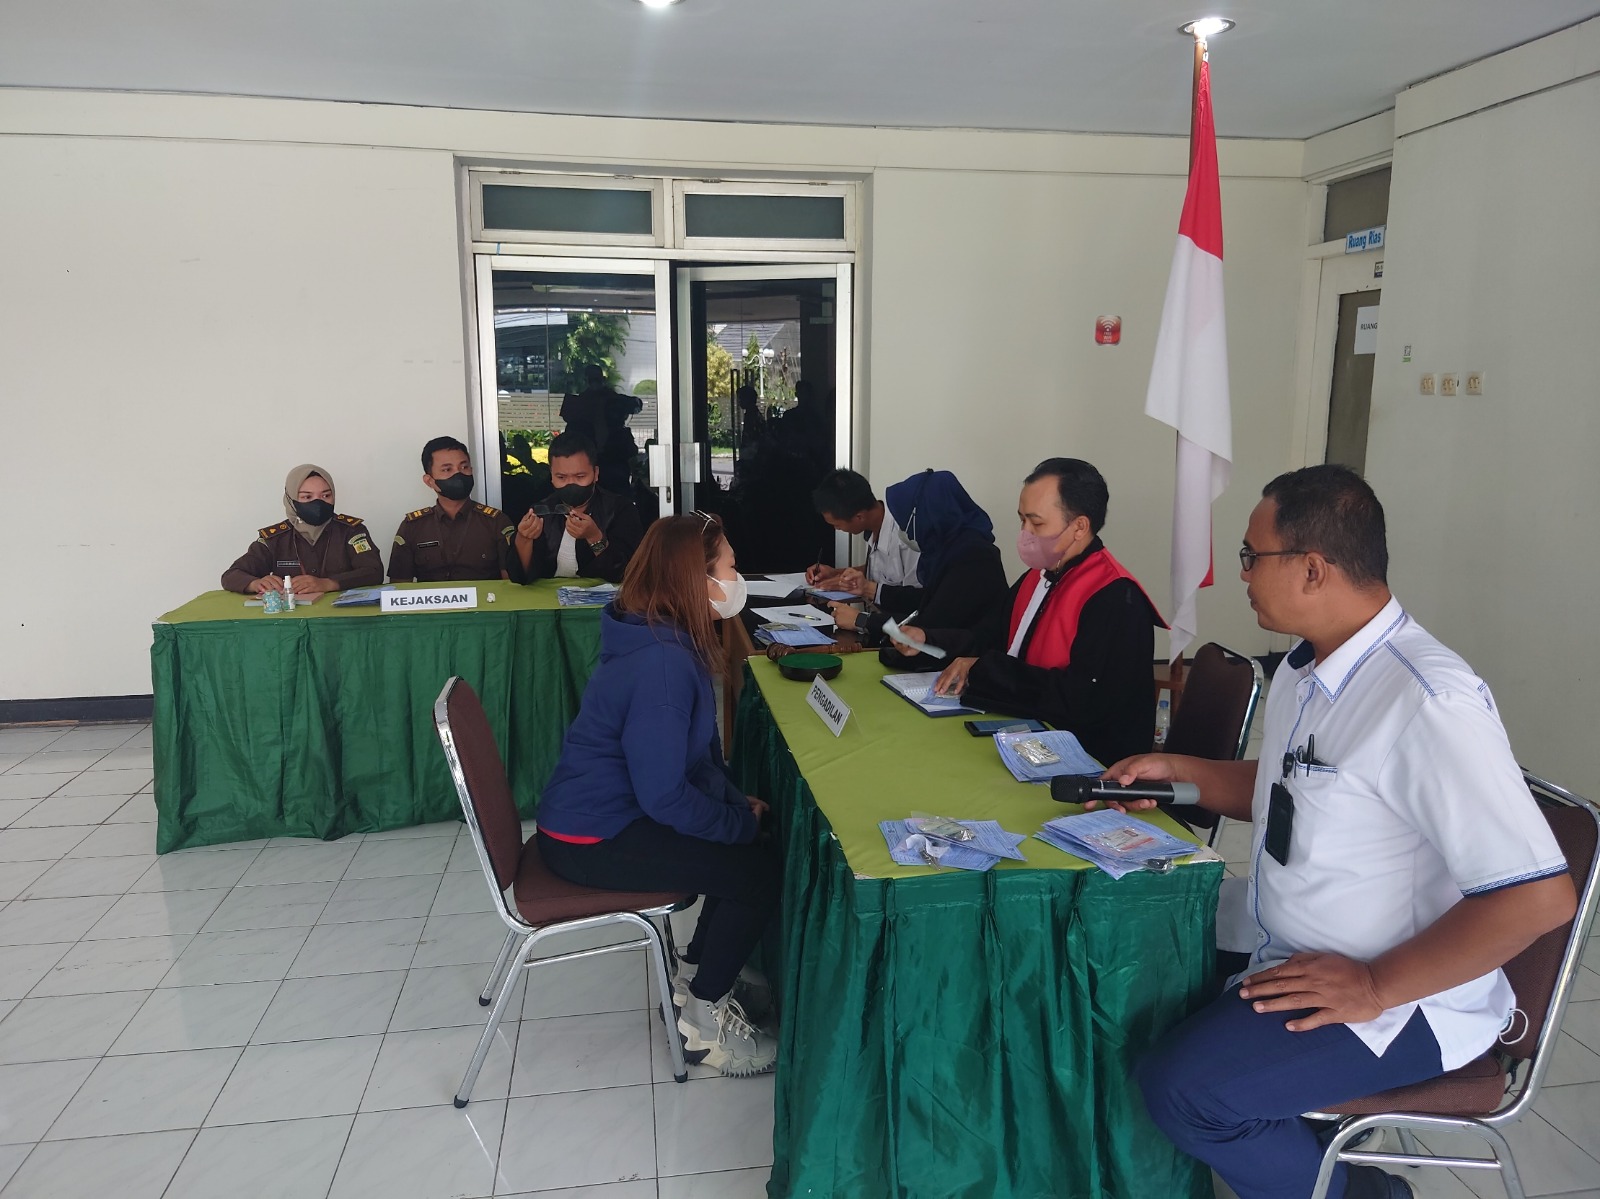 Pengadilan Negeri Yogyakarta Melaksanakan Sidang di Tempat